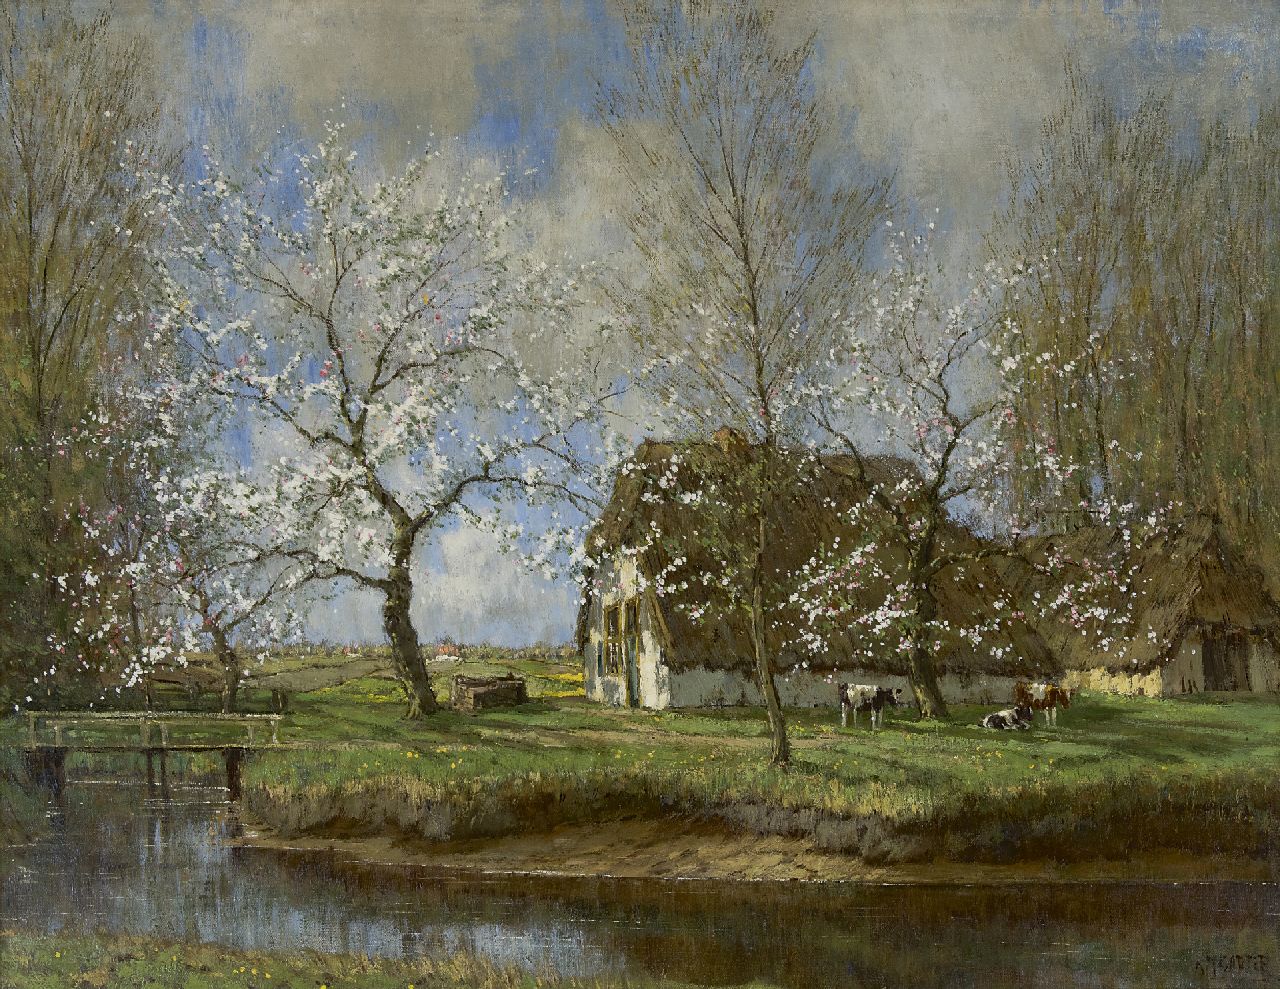 Gorter A.M.  | 'Arnold' Marc Gorter, Spring landscape, oil on canvas 71.9 x 91.8 cm, signed l.r.